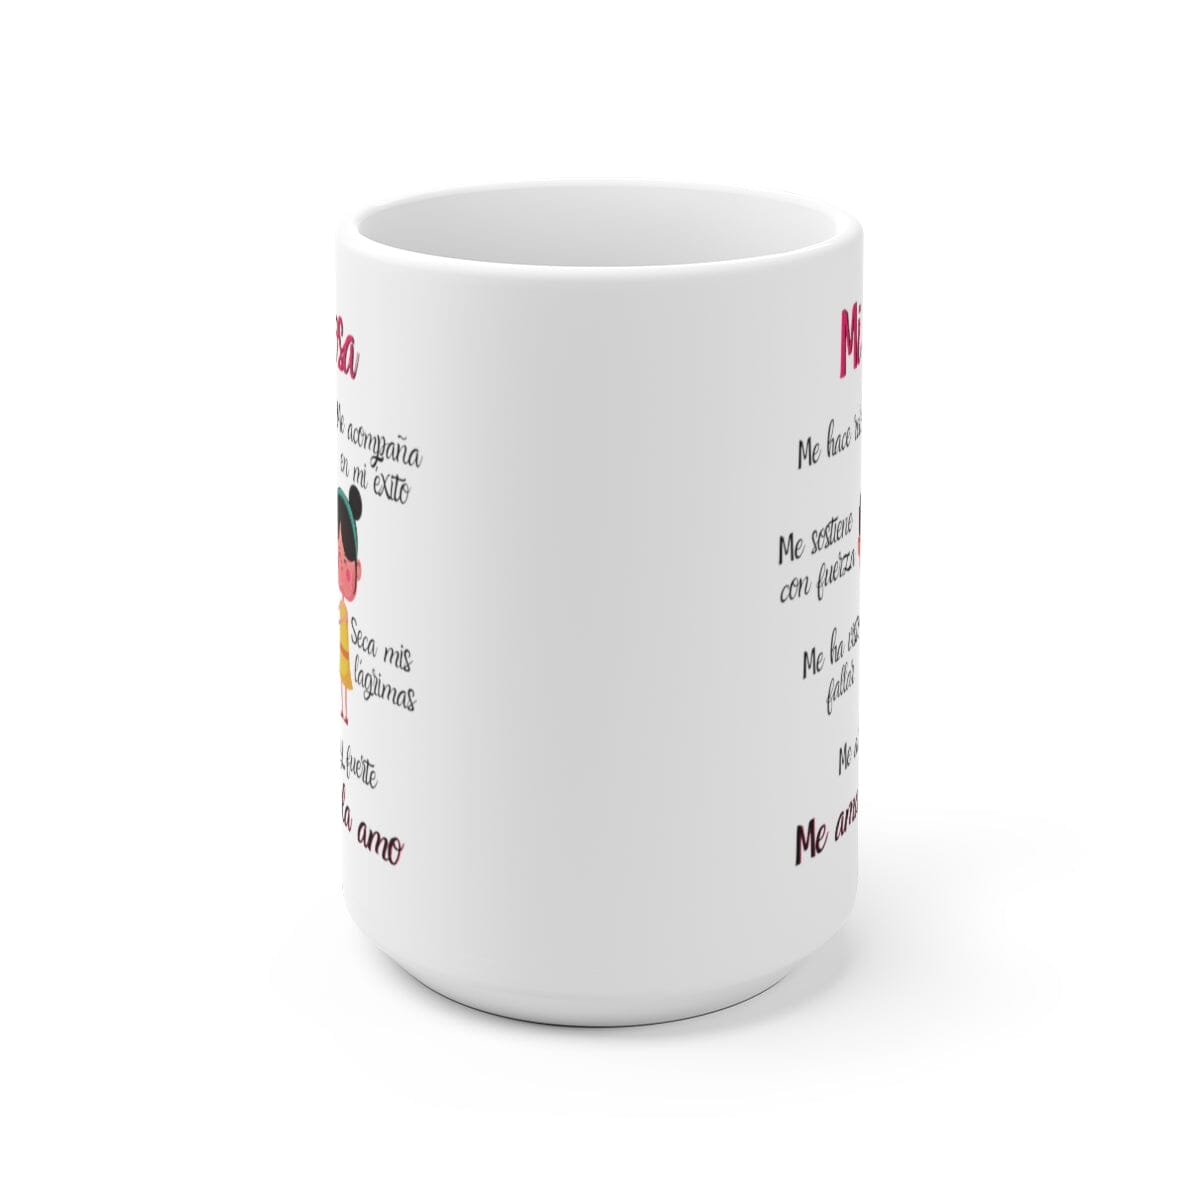 Taza de café con mensaje cristiano: Mi esposa… 11 y 15 onzas Mug Printify 